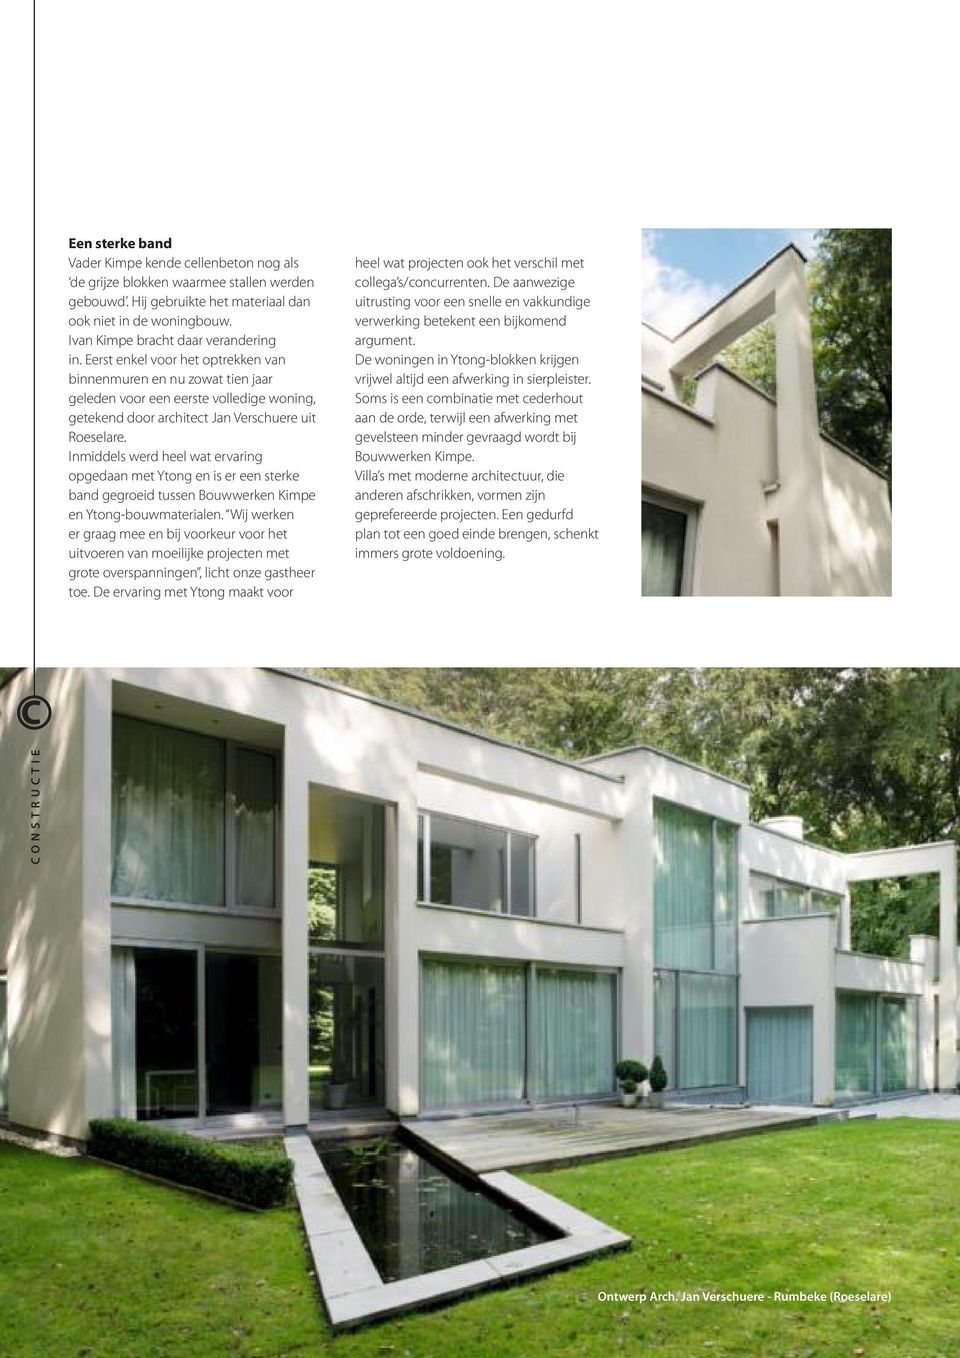 Eerst enkel voor het optrekken van binnenmuren en nu zowat tien jaar geleden voor een eerste volledige woning, getekend door architect Jan Verschuere uit Roeselare.